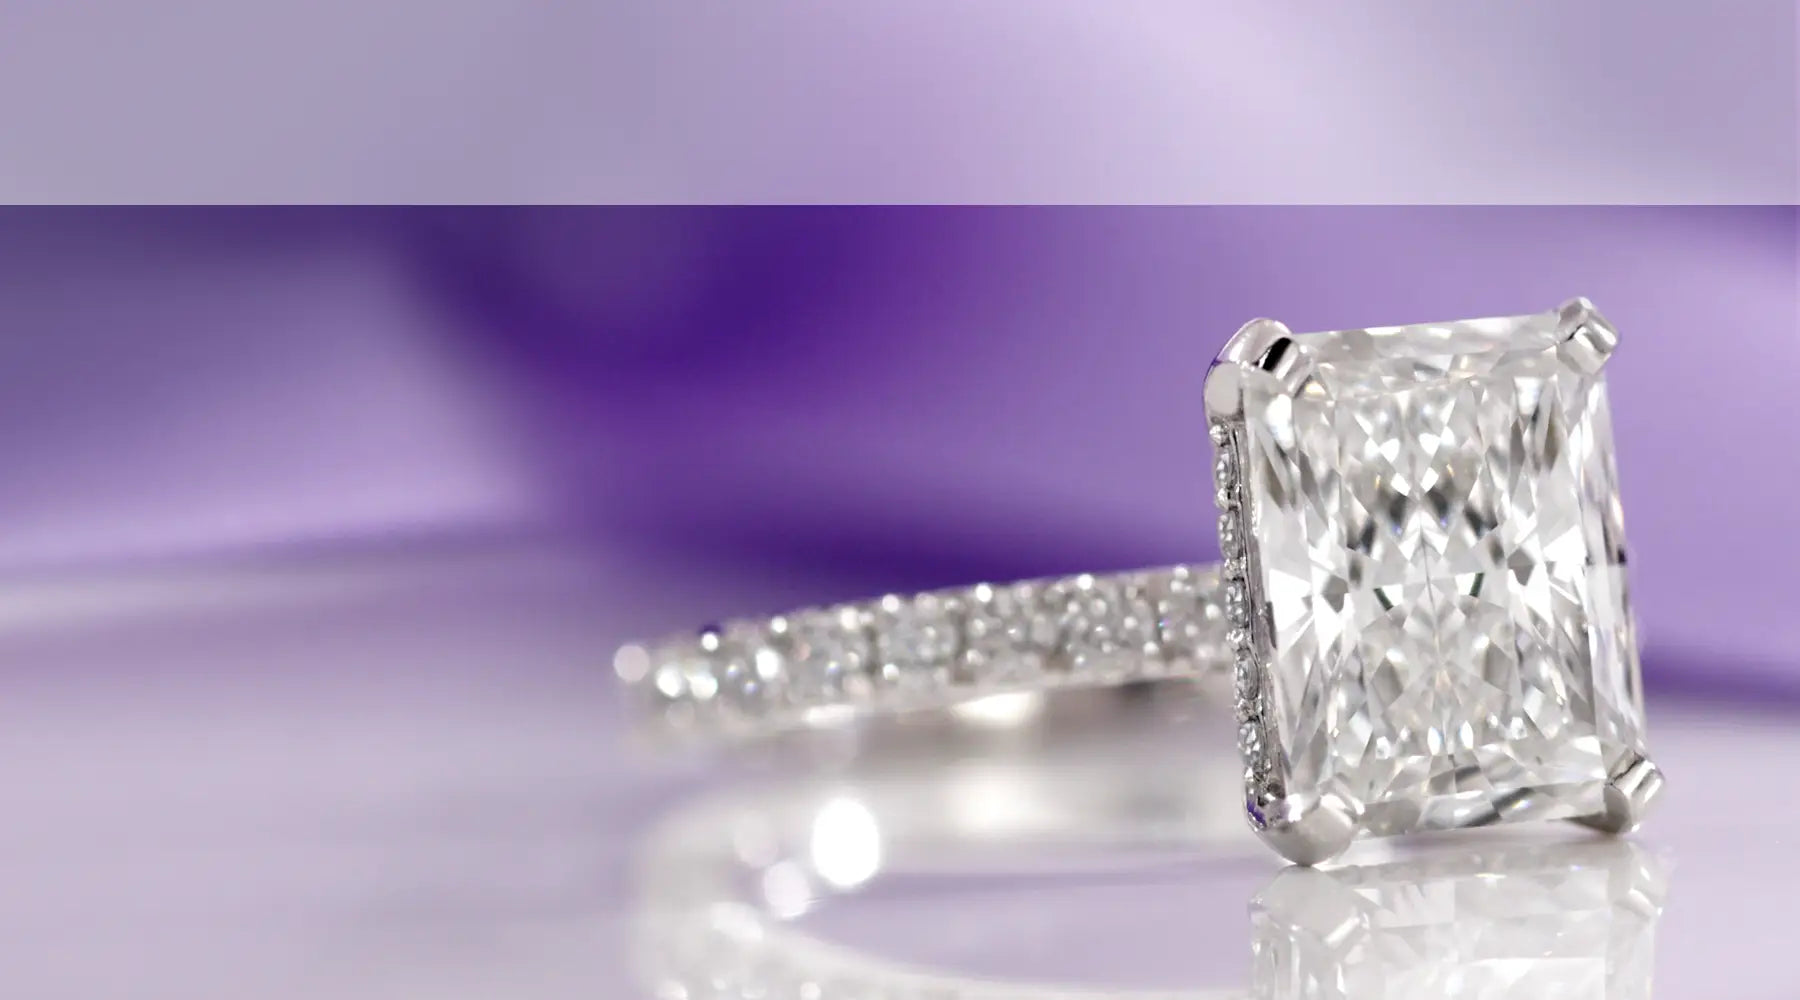 gold and platinum lab created engagement rings Diamanti by Quorri